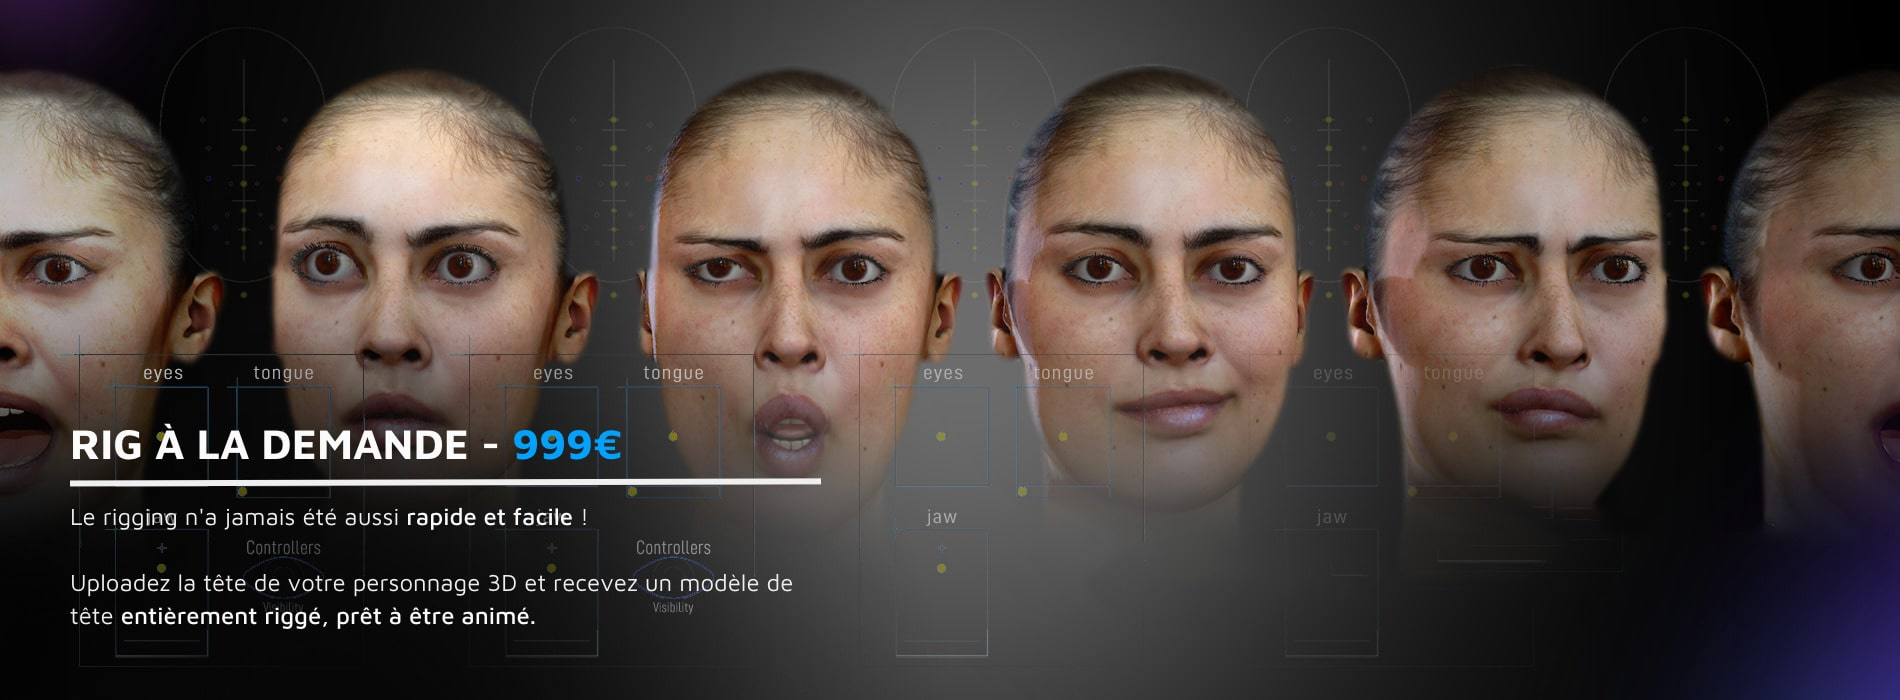 Modèle 3D d'une fille faisant différentes expressions par blendshape grâce à un rig 3D.